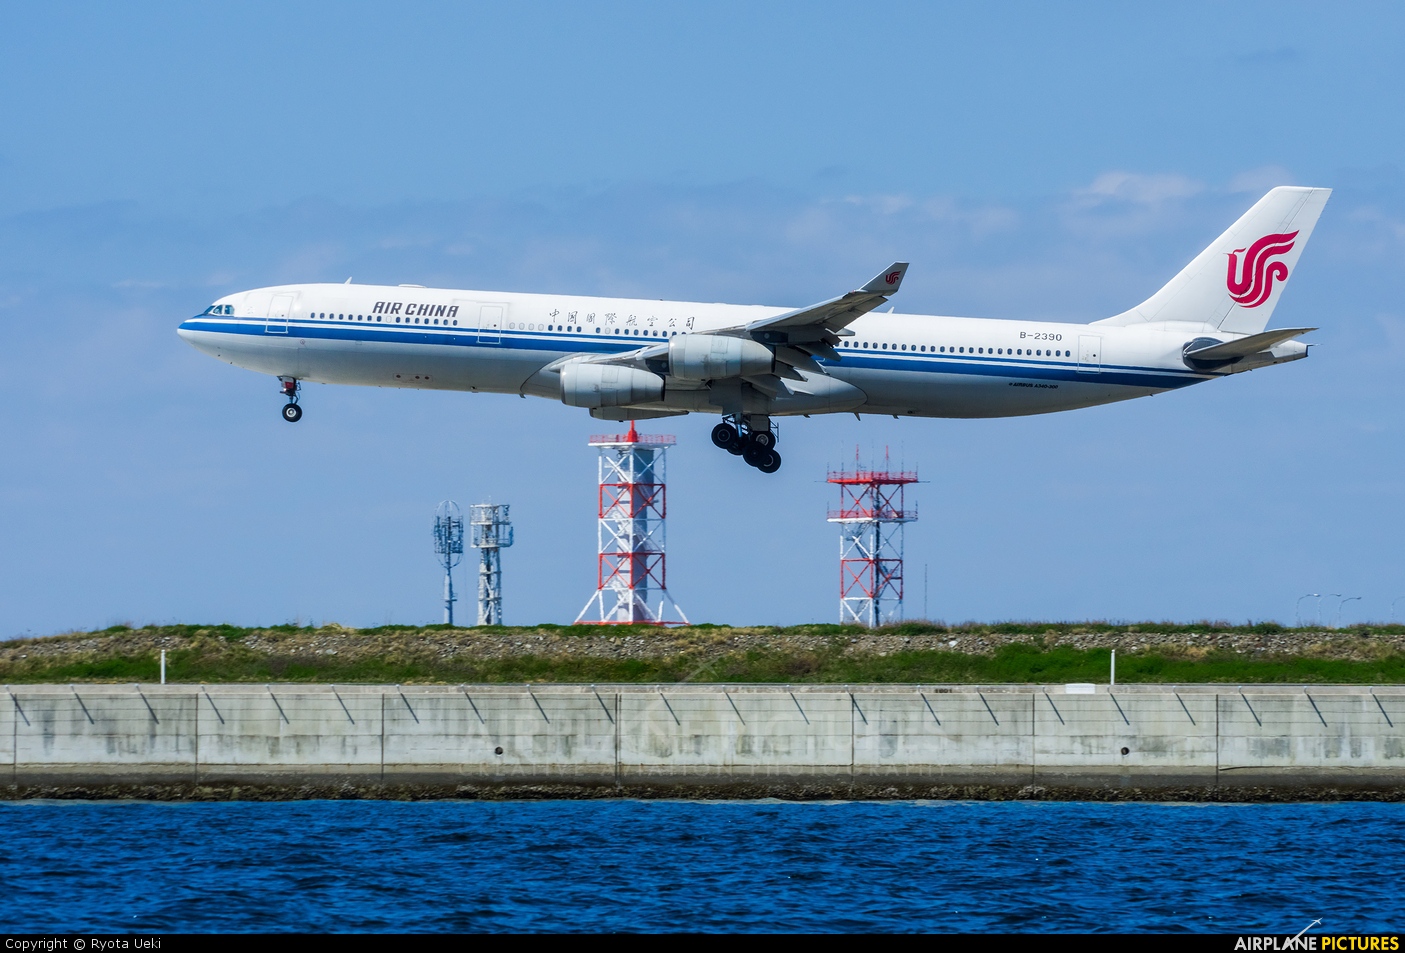 Air China B-2390 aircraft at Kansai Intl